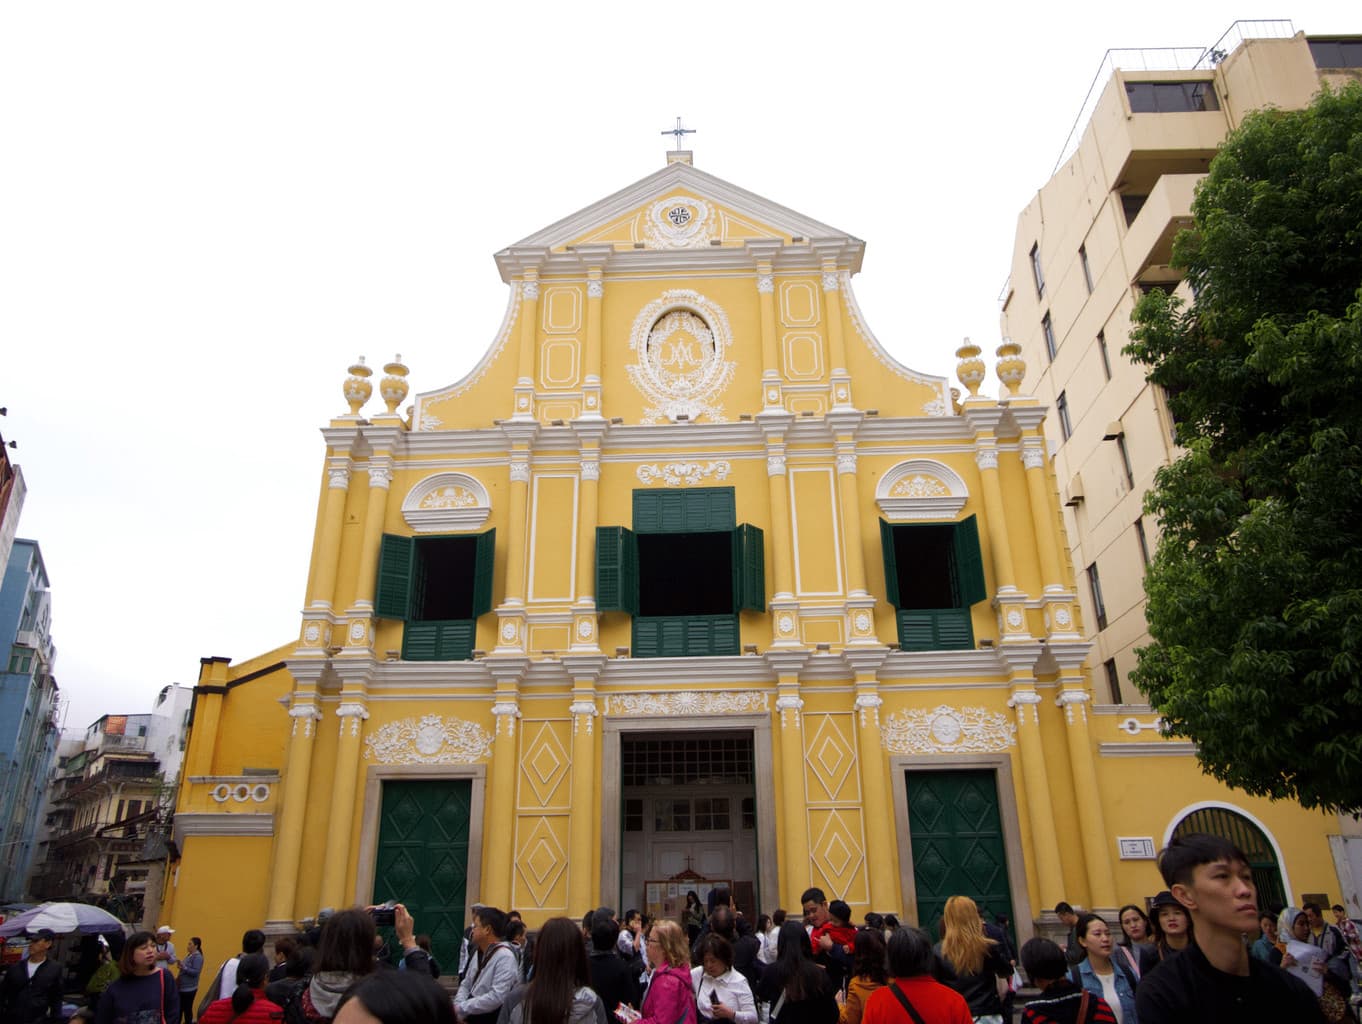 "St. Dominic Church Macau"St. Dominic Church Macau"